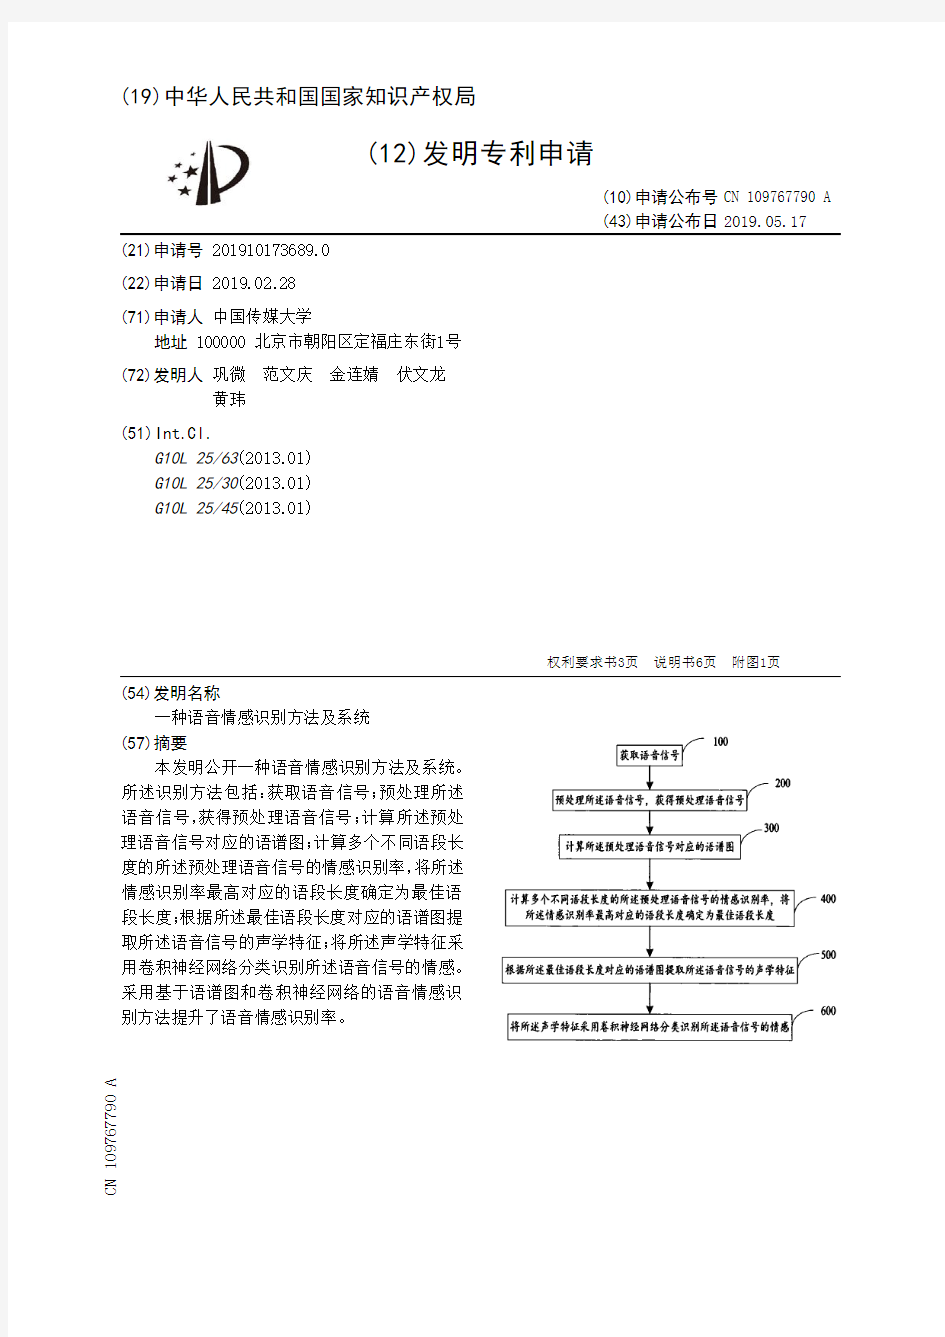 【CN109767790A】一种语音情感识别方法及系统【专利】